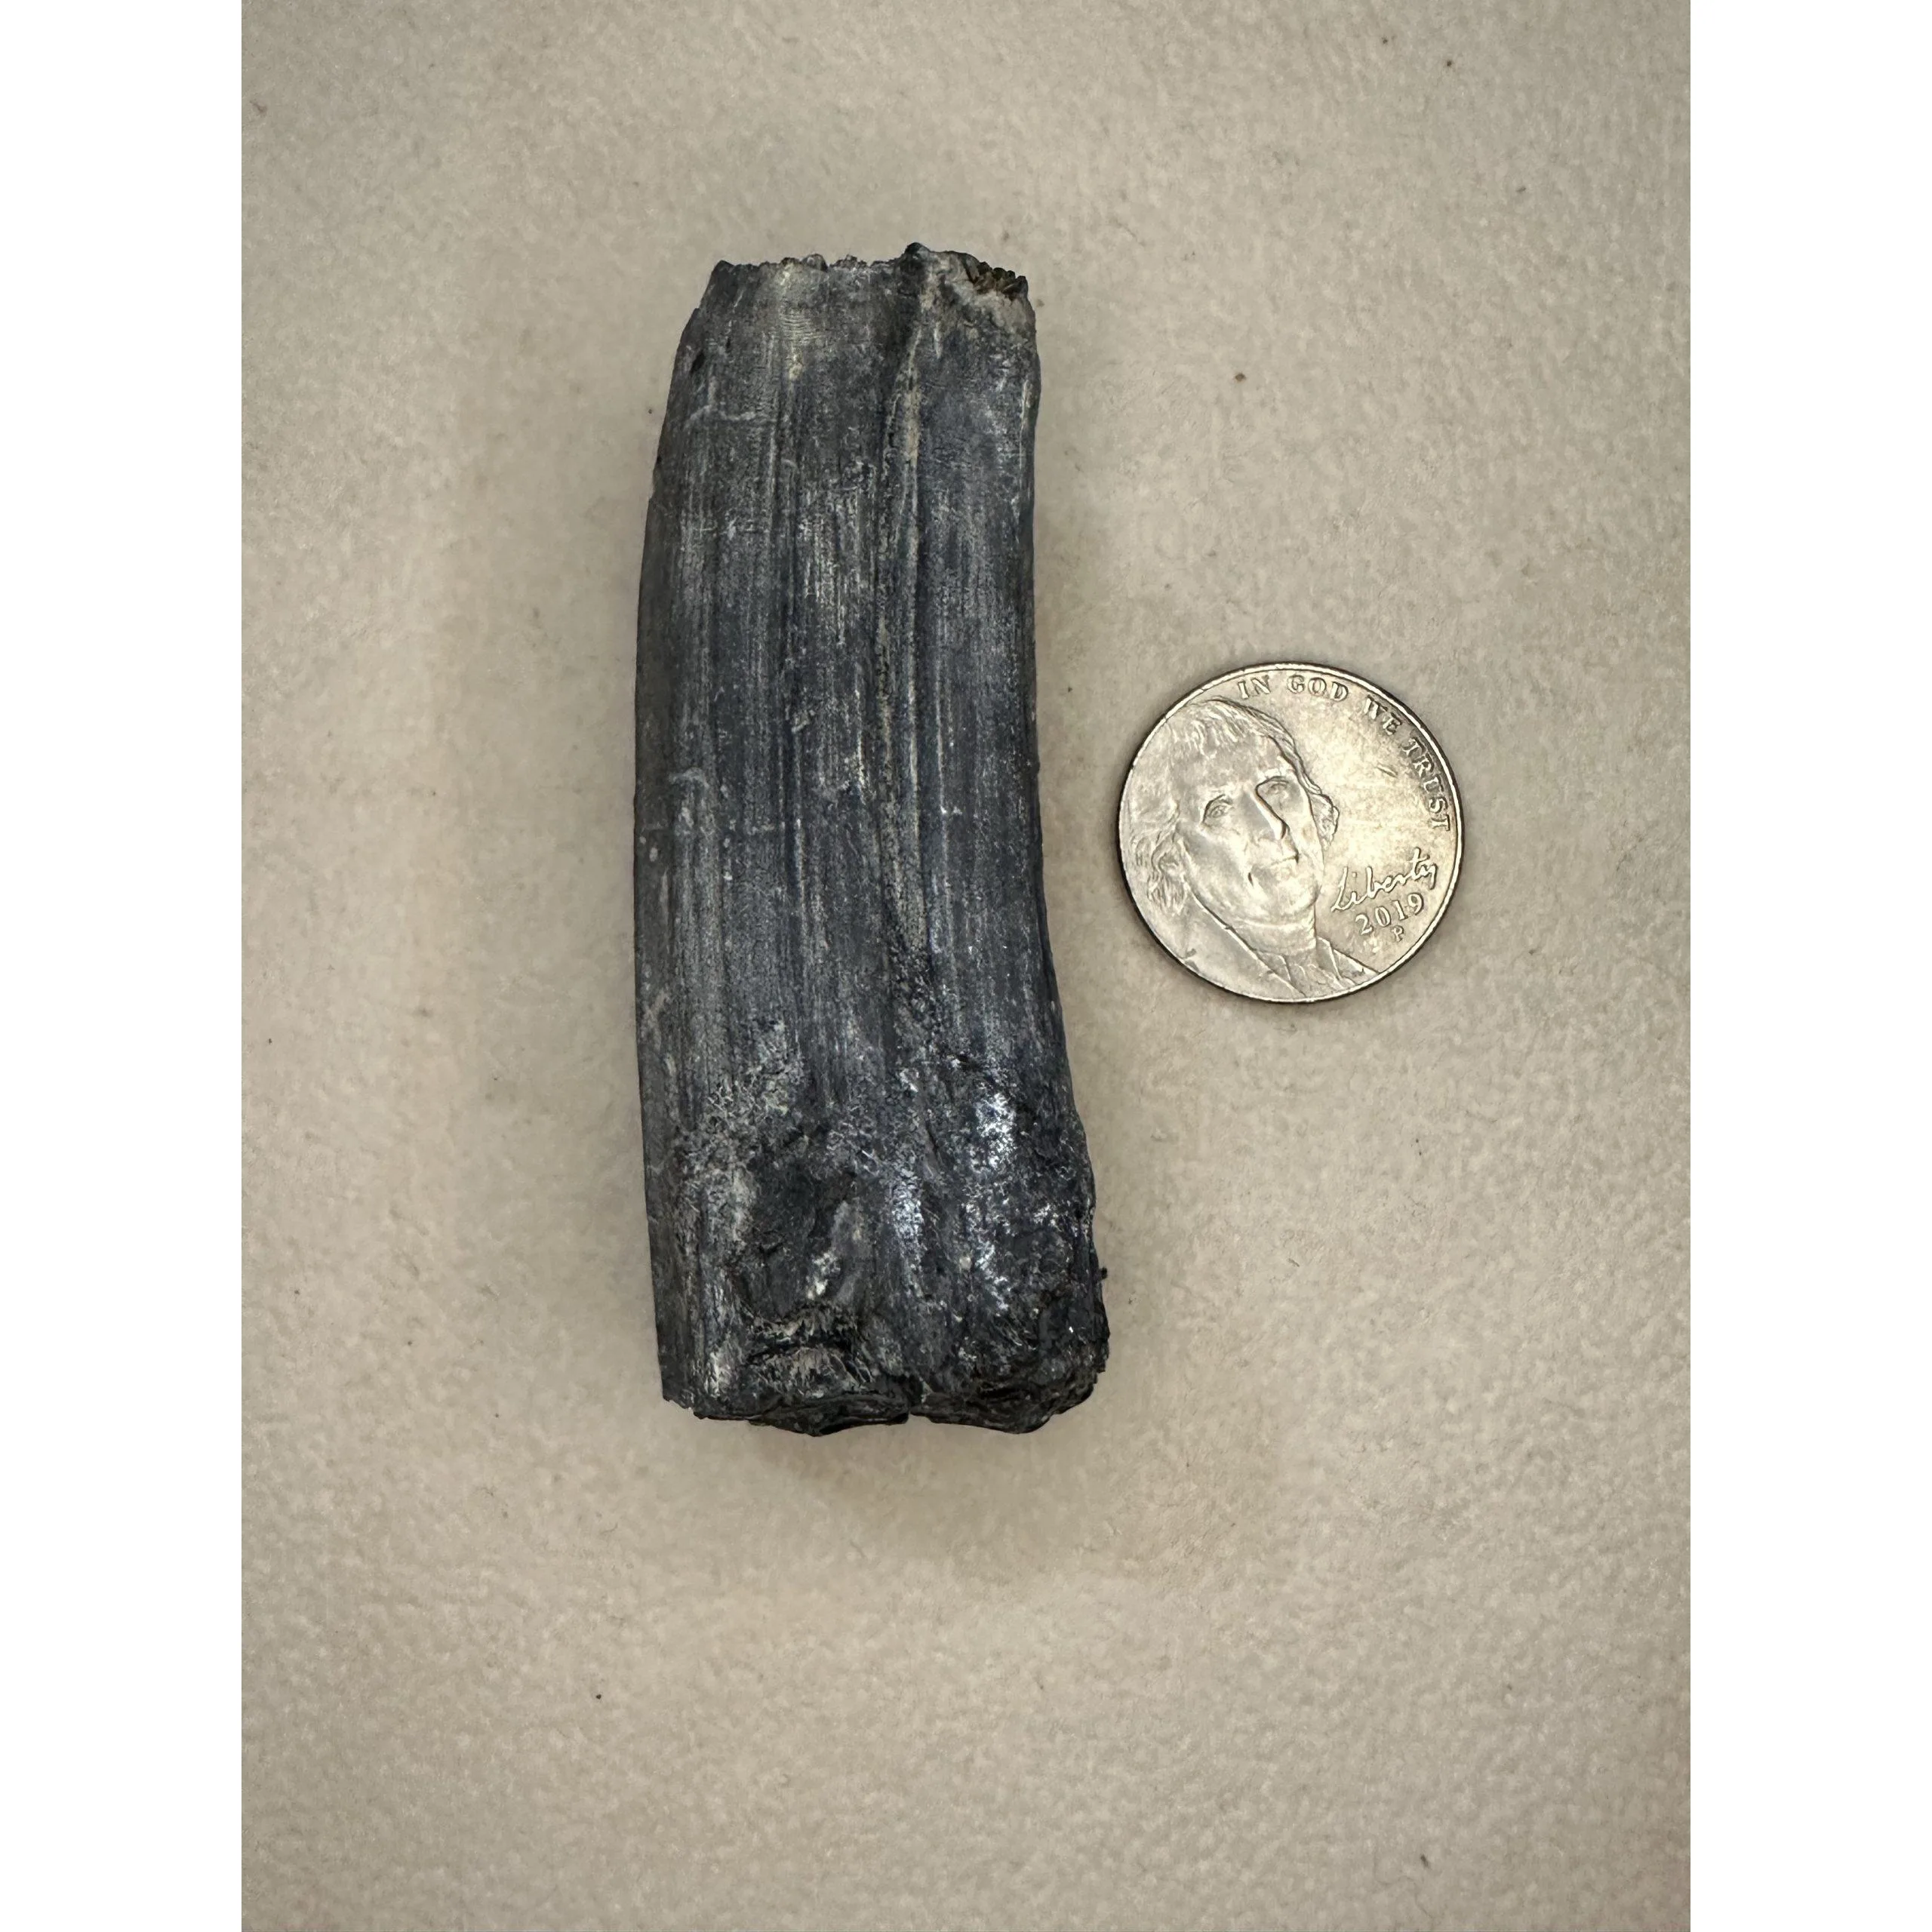 Fossil Horse Tooth – Florida, 3″ Molar, A grade Prehistoric Online